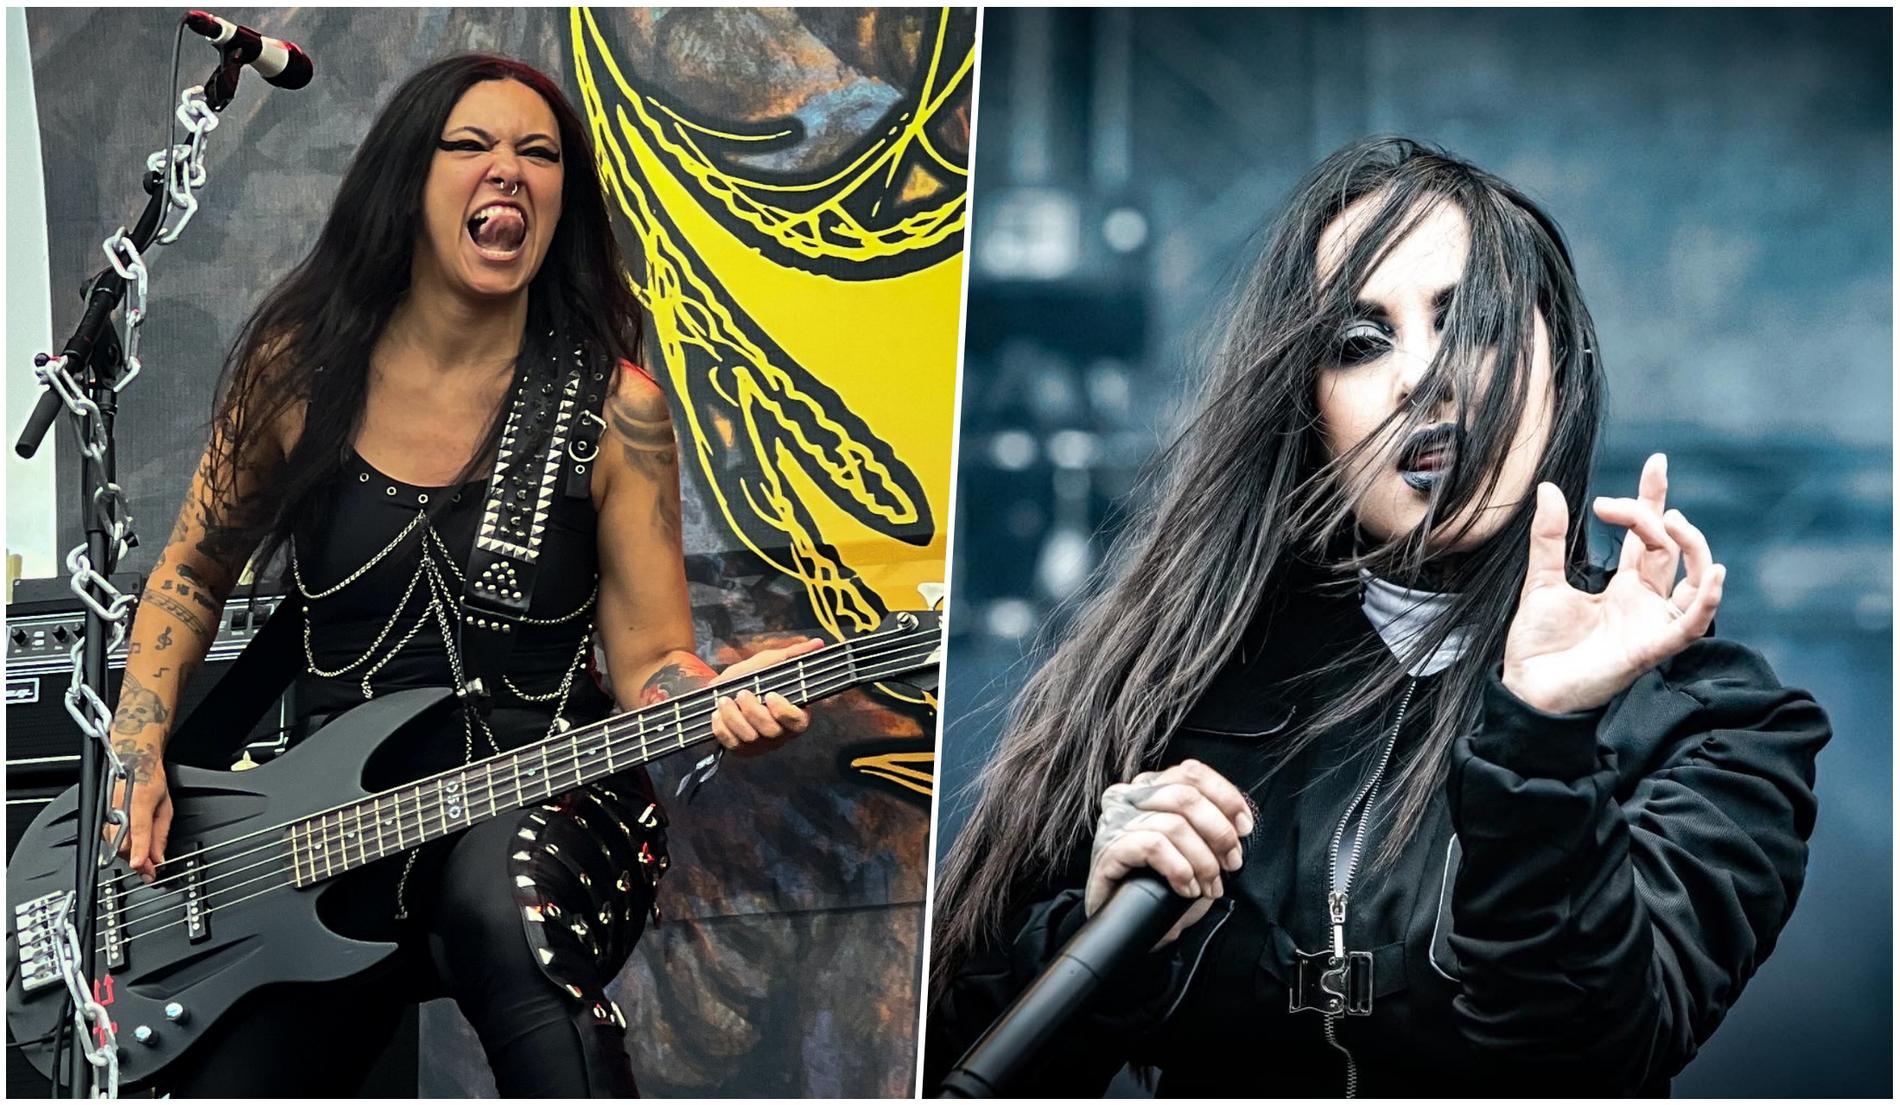 Fernanda Lira i Crypta och Tatiana Shmayluk i Jinjer var två av flera kvinnor som uppträdde på helgens upplaga av Gefle Metal Festival.